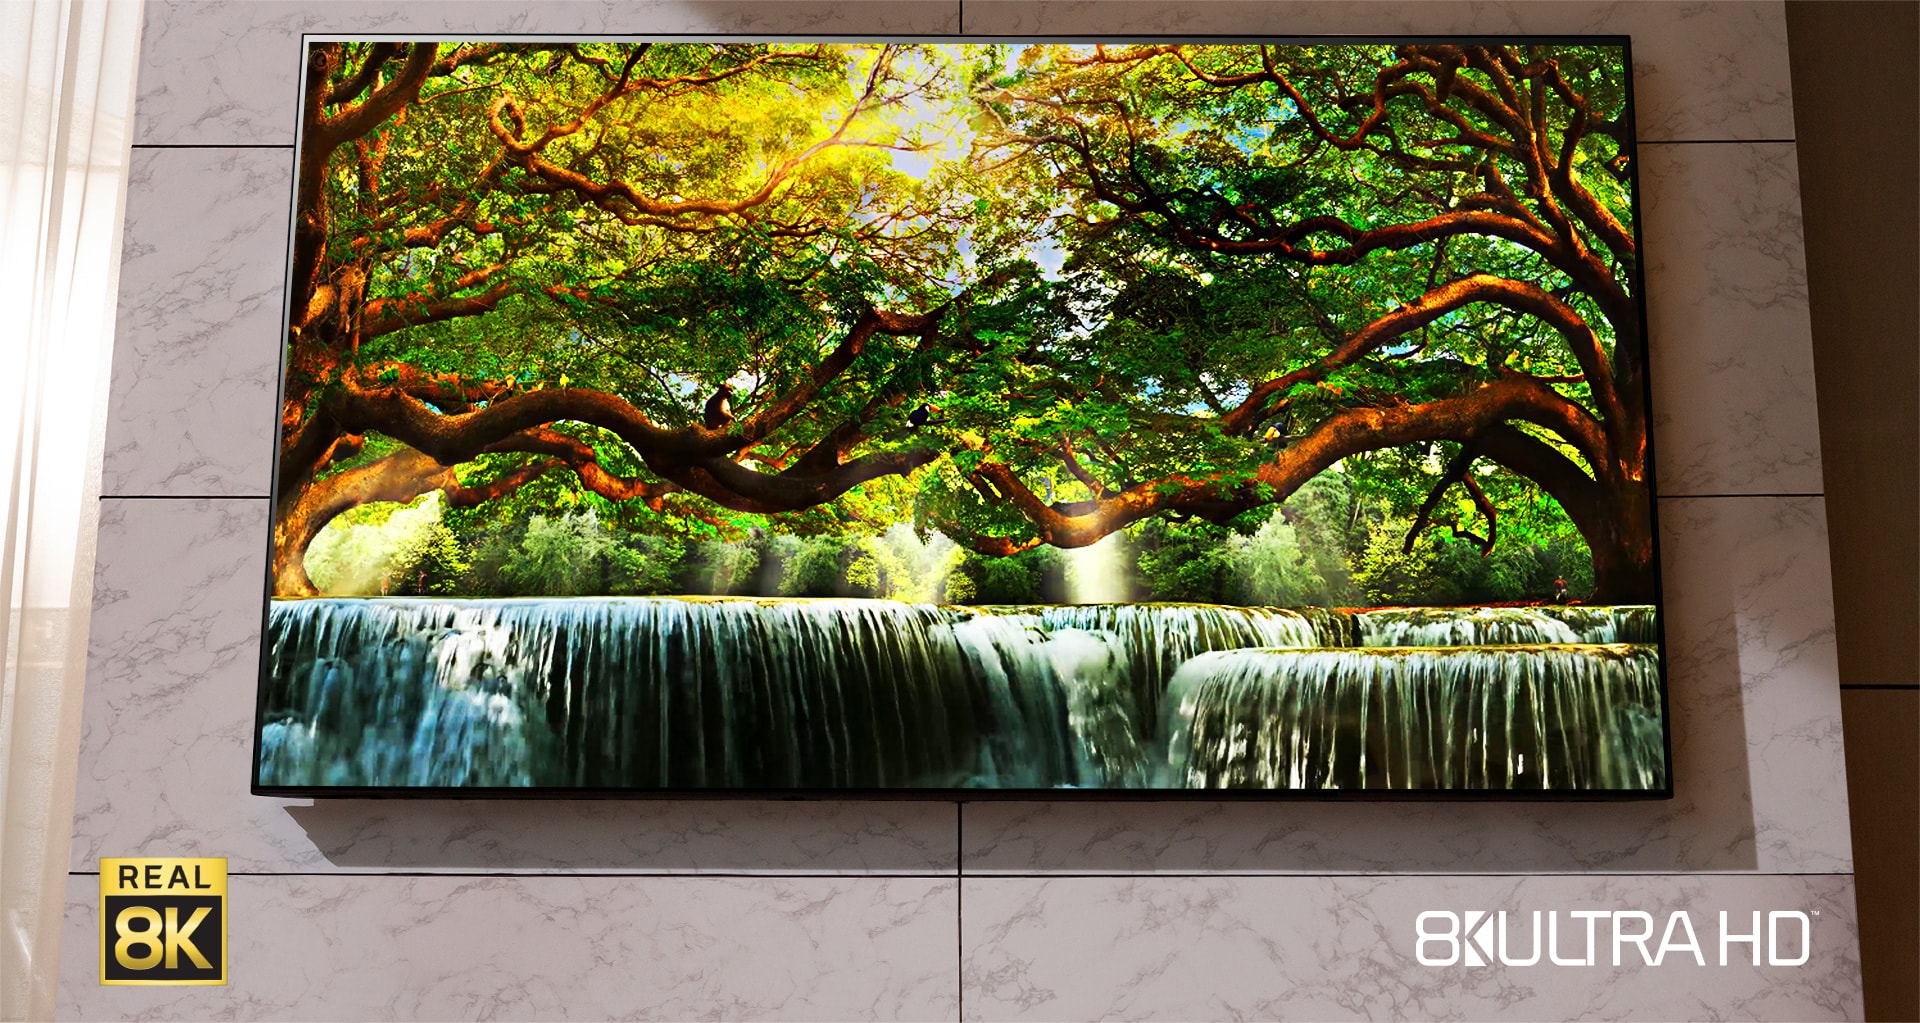 Et Nanocell-TV hænger på væggen. Der vises et naturlandskab på skærmen.